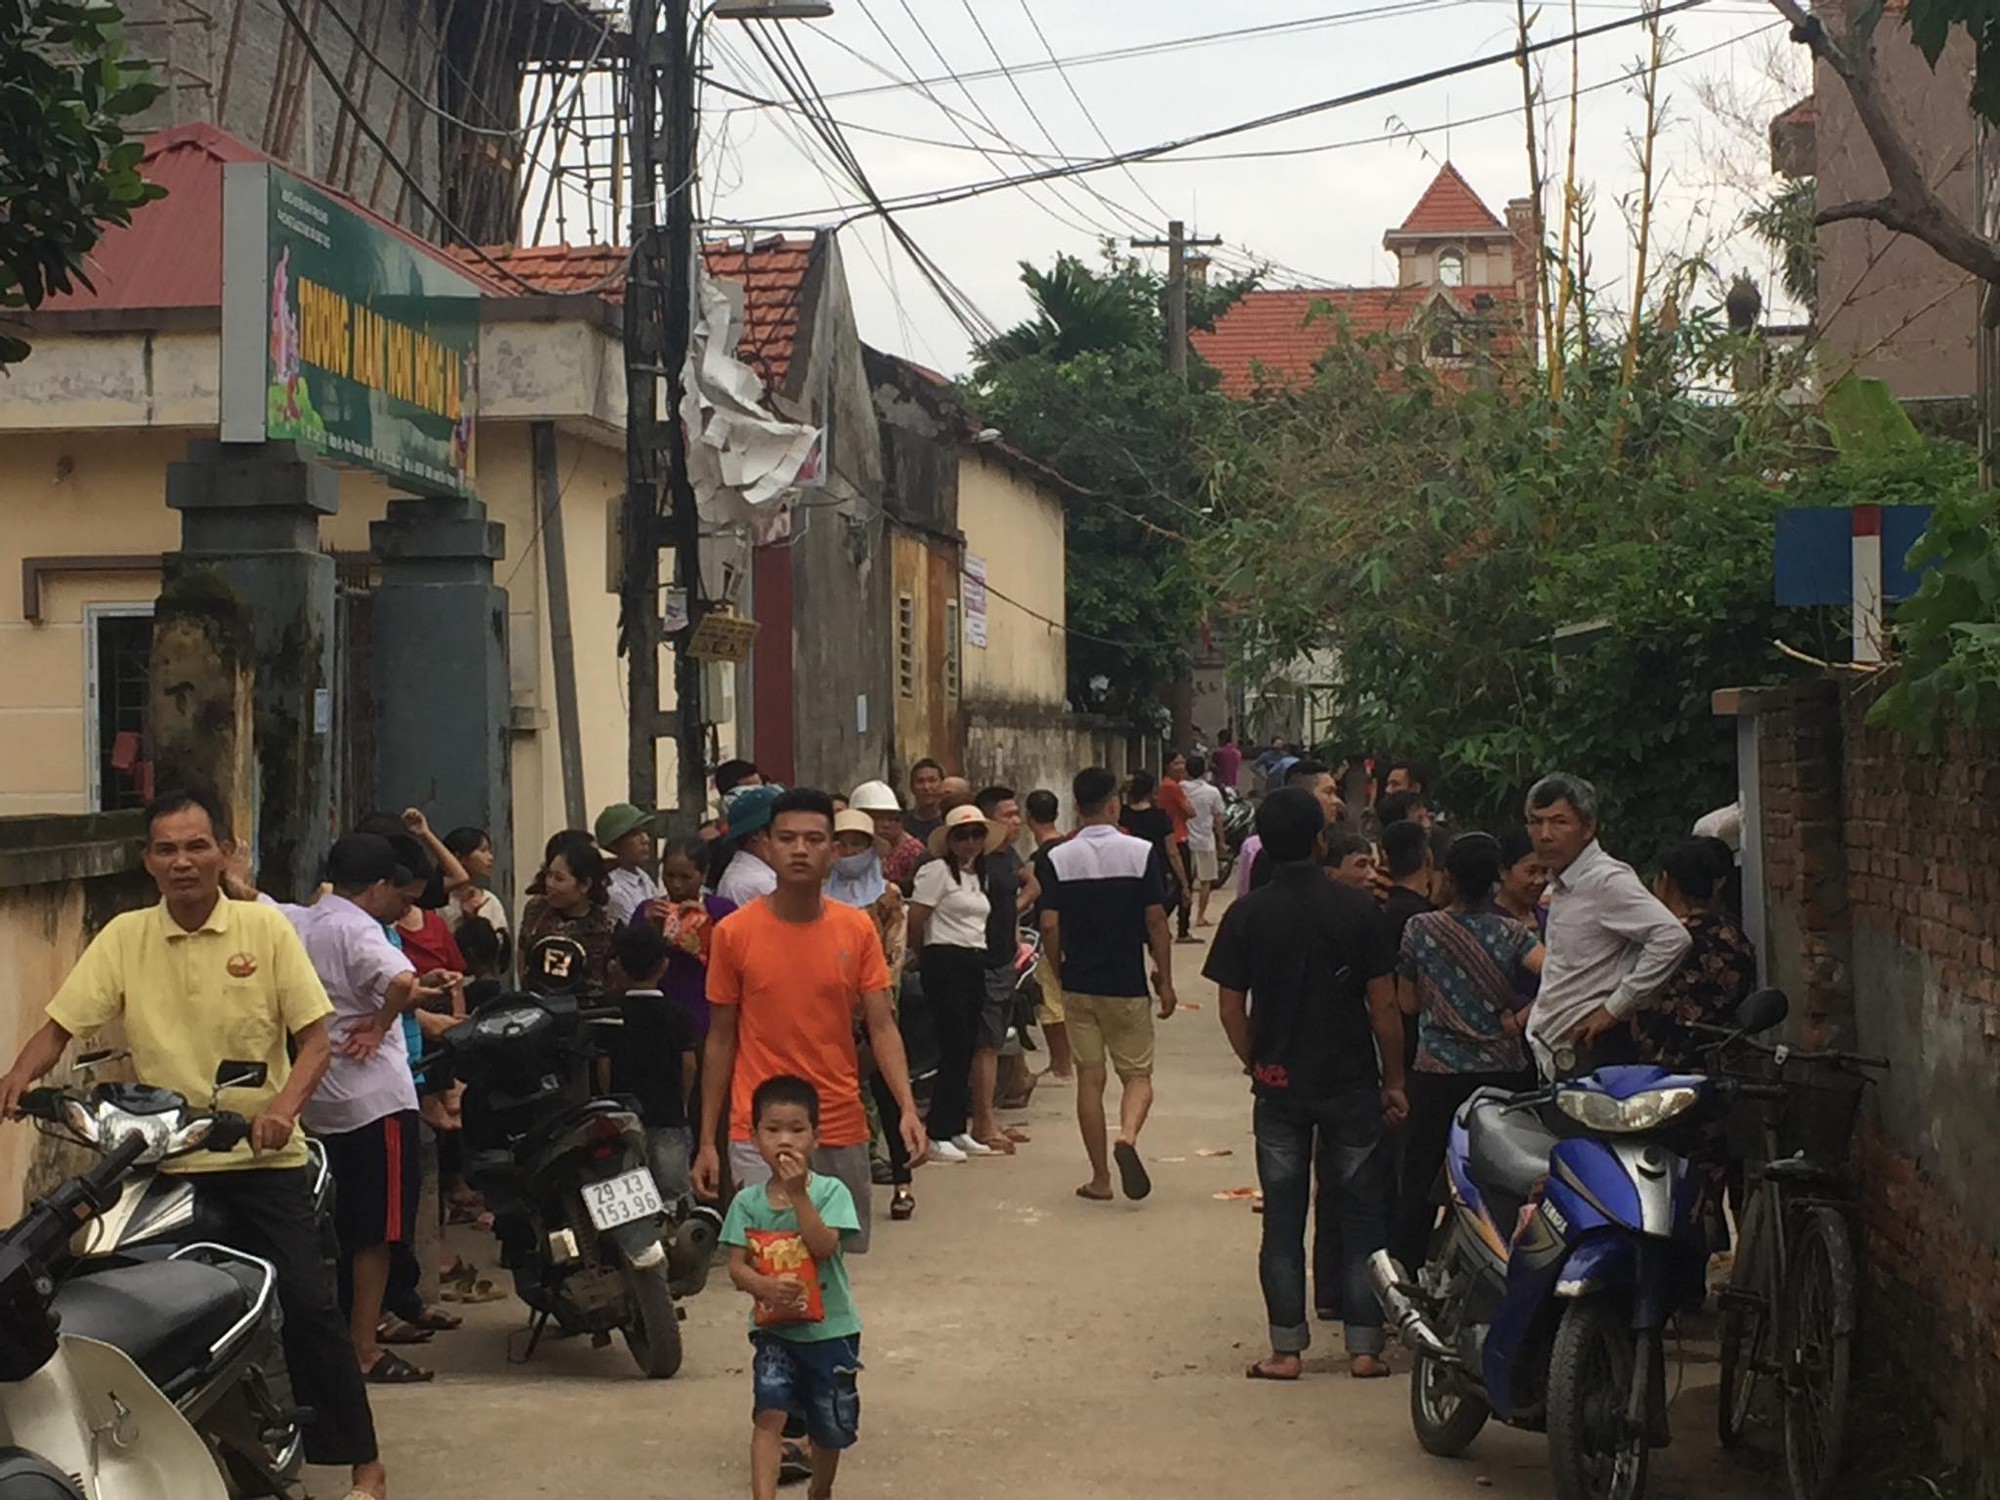 Vụ anh cầm dao truy sát cả gia đình em trai ở Hà Nội: Nghi phạm thành khẩn khai báo, mong được khoan hồng-2